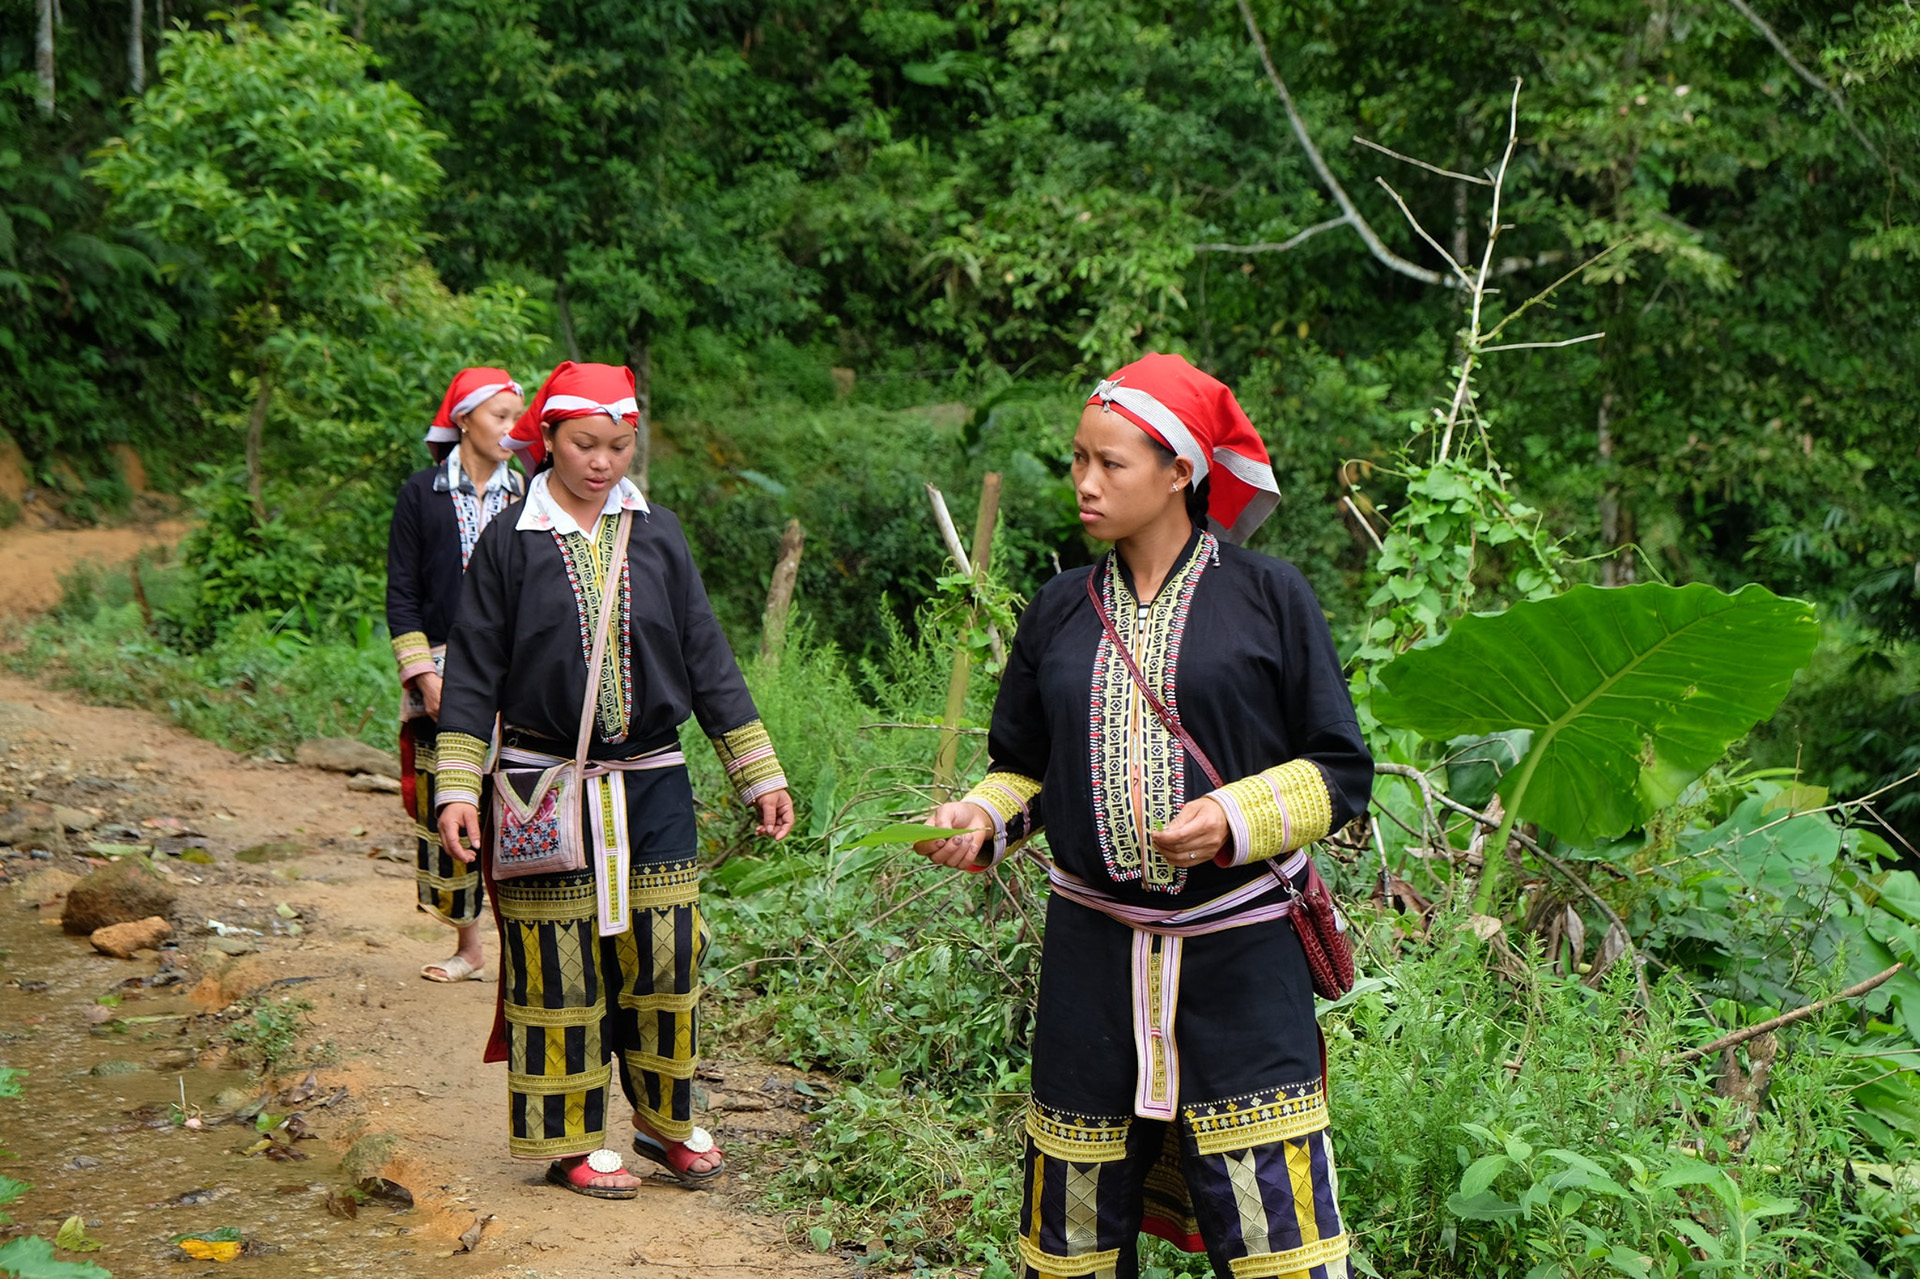 Members of the ethnic Dao minority in Vietnam